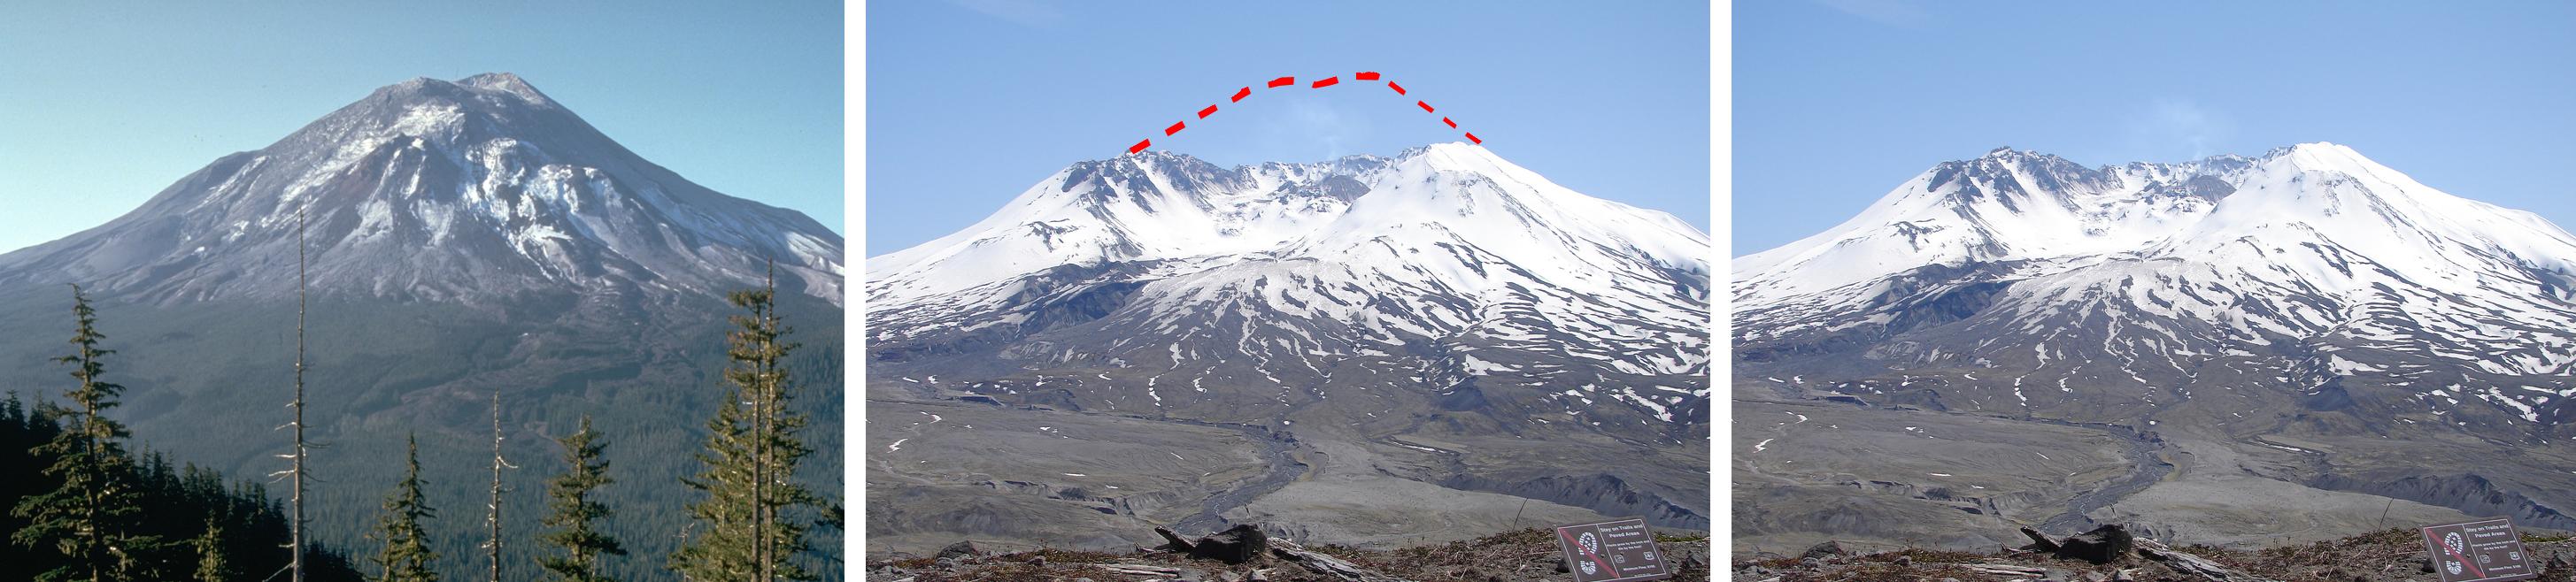 Le Mont Saint Helens, dans l'Etat de Washington, aux Etats-Unis avant et après son éruption du 18 mai 1980. [Gryphonis/CC - USGS/wikinews]